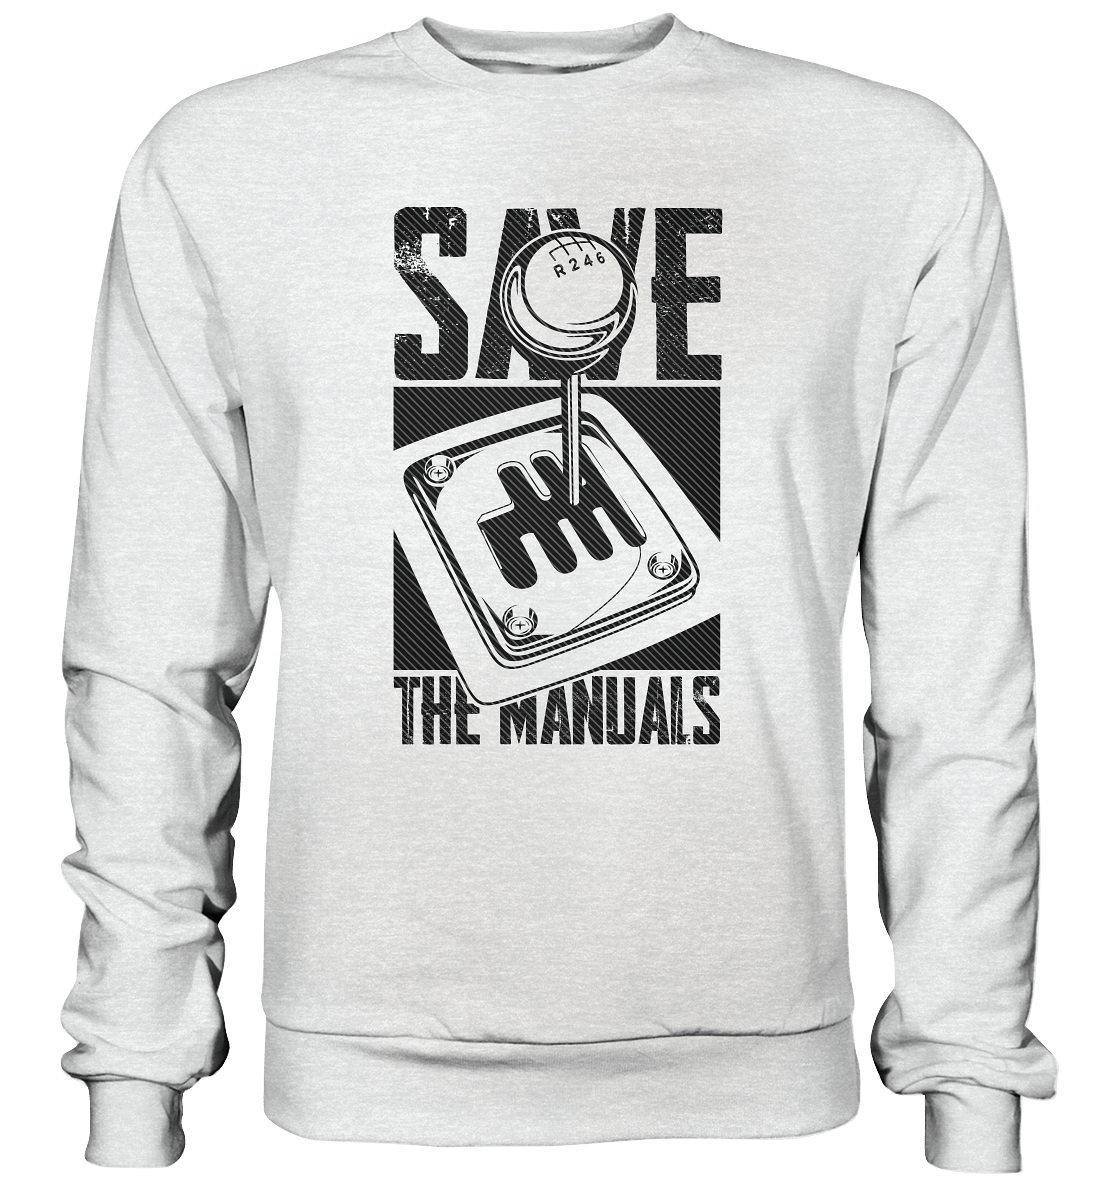 Save the Manuals dunkel - Premium Sweatshirt - MotoMerch.de